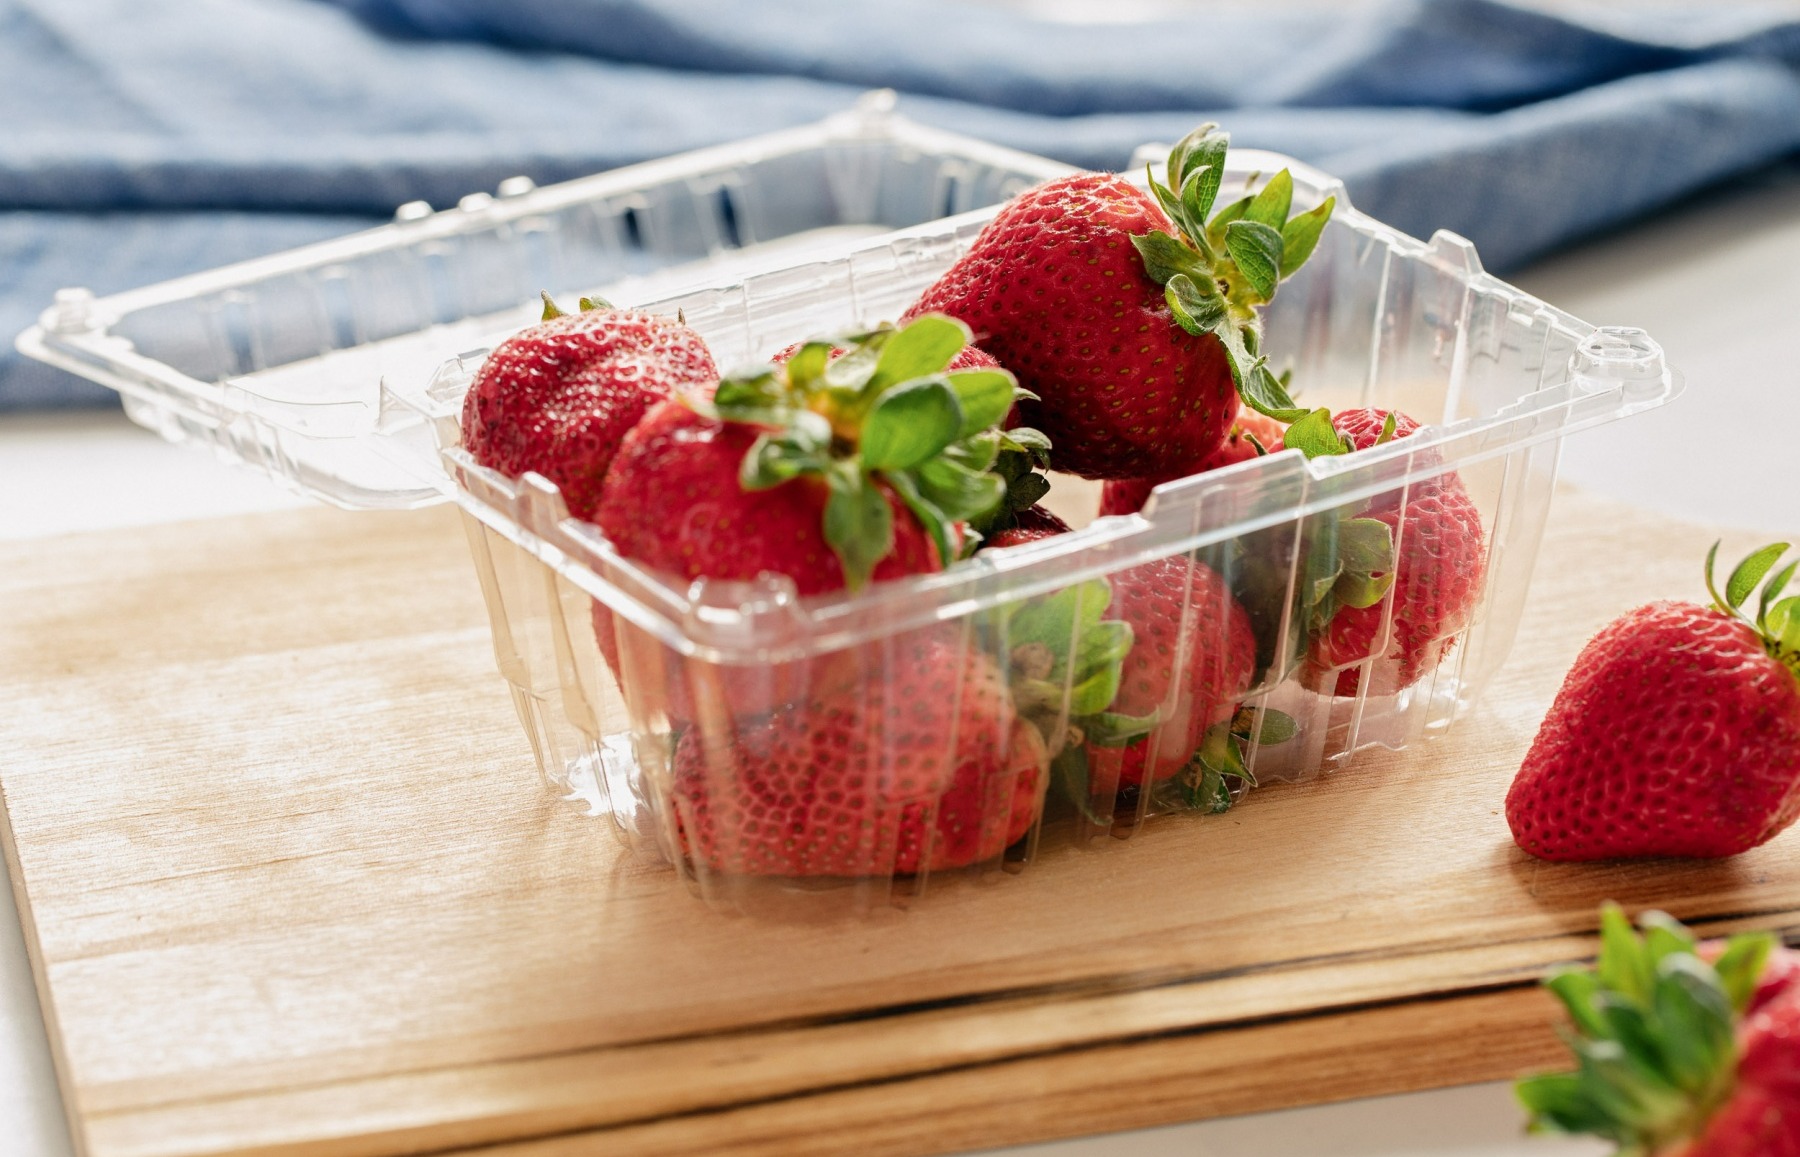 توت فرنگی در ظرف پلاستیکی -نگهداری از توت فرنگی در یخچال